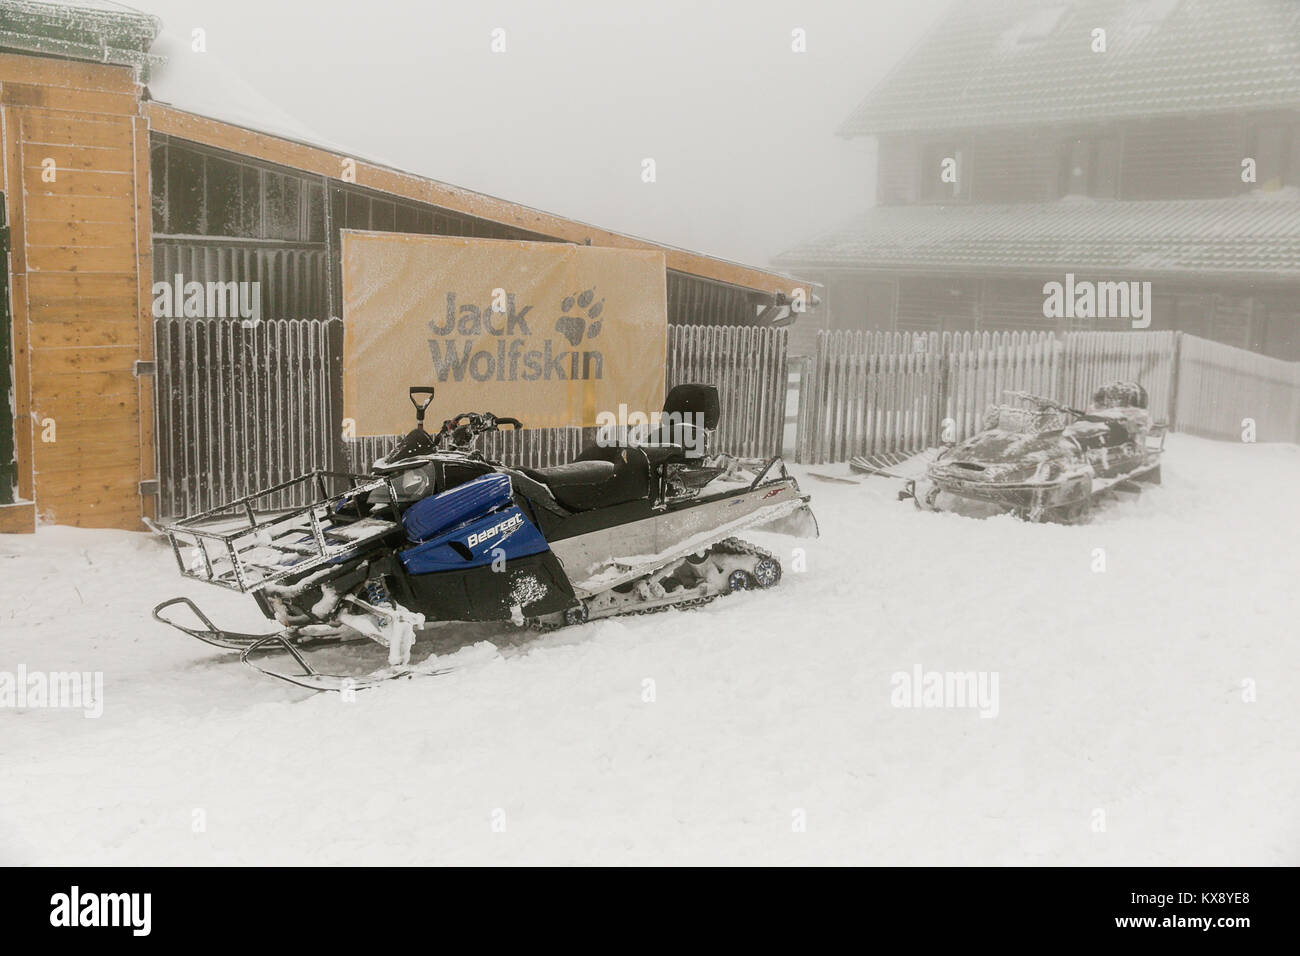 Ein schneemobil für Miete, die in schwierigen Bedingungen im Winter auf Schnee und Eis zu fahren. Foto auf einem Berg Skrzyczne, nachdem über Nacht Schneefall. Stockfoto